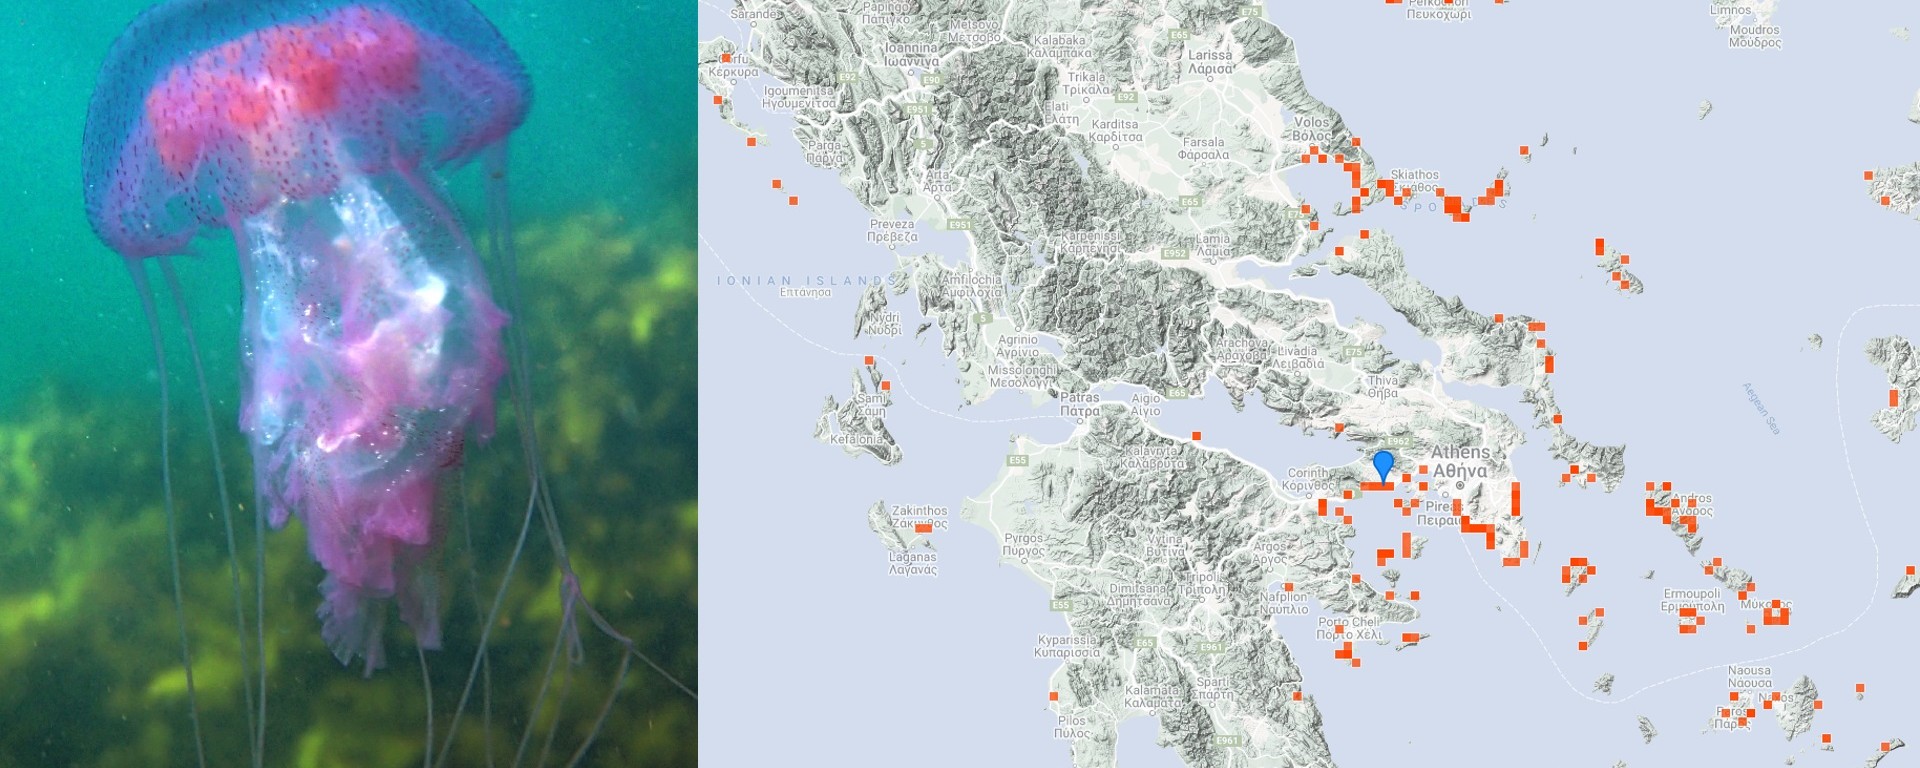 gossip whip eel Plajele din Grecia pline de meduze pe care să le eviți ca să nu-ți strici  vacanța